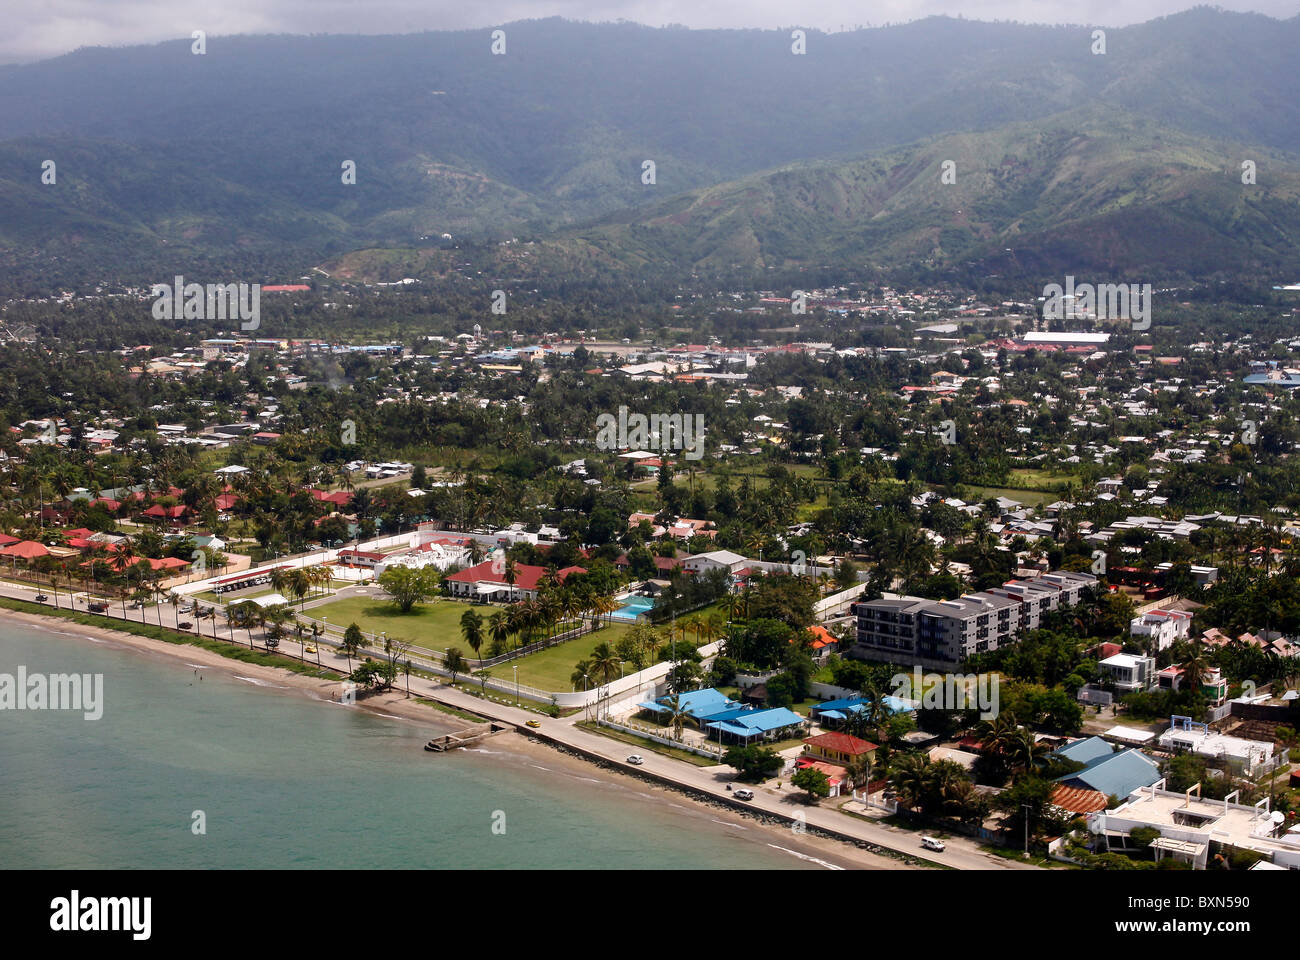 Birds eye view on Dili, capital of Timor Leste (East Timor) Stock Photo